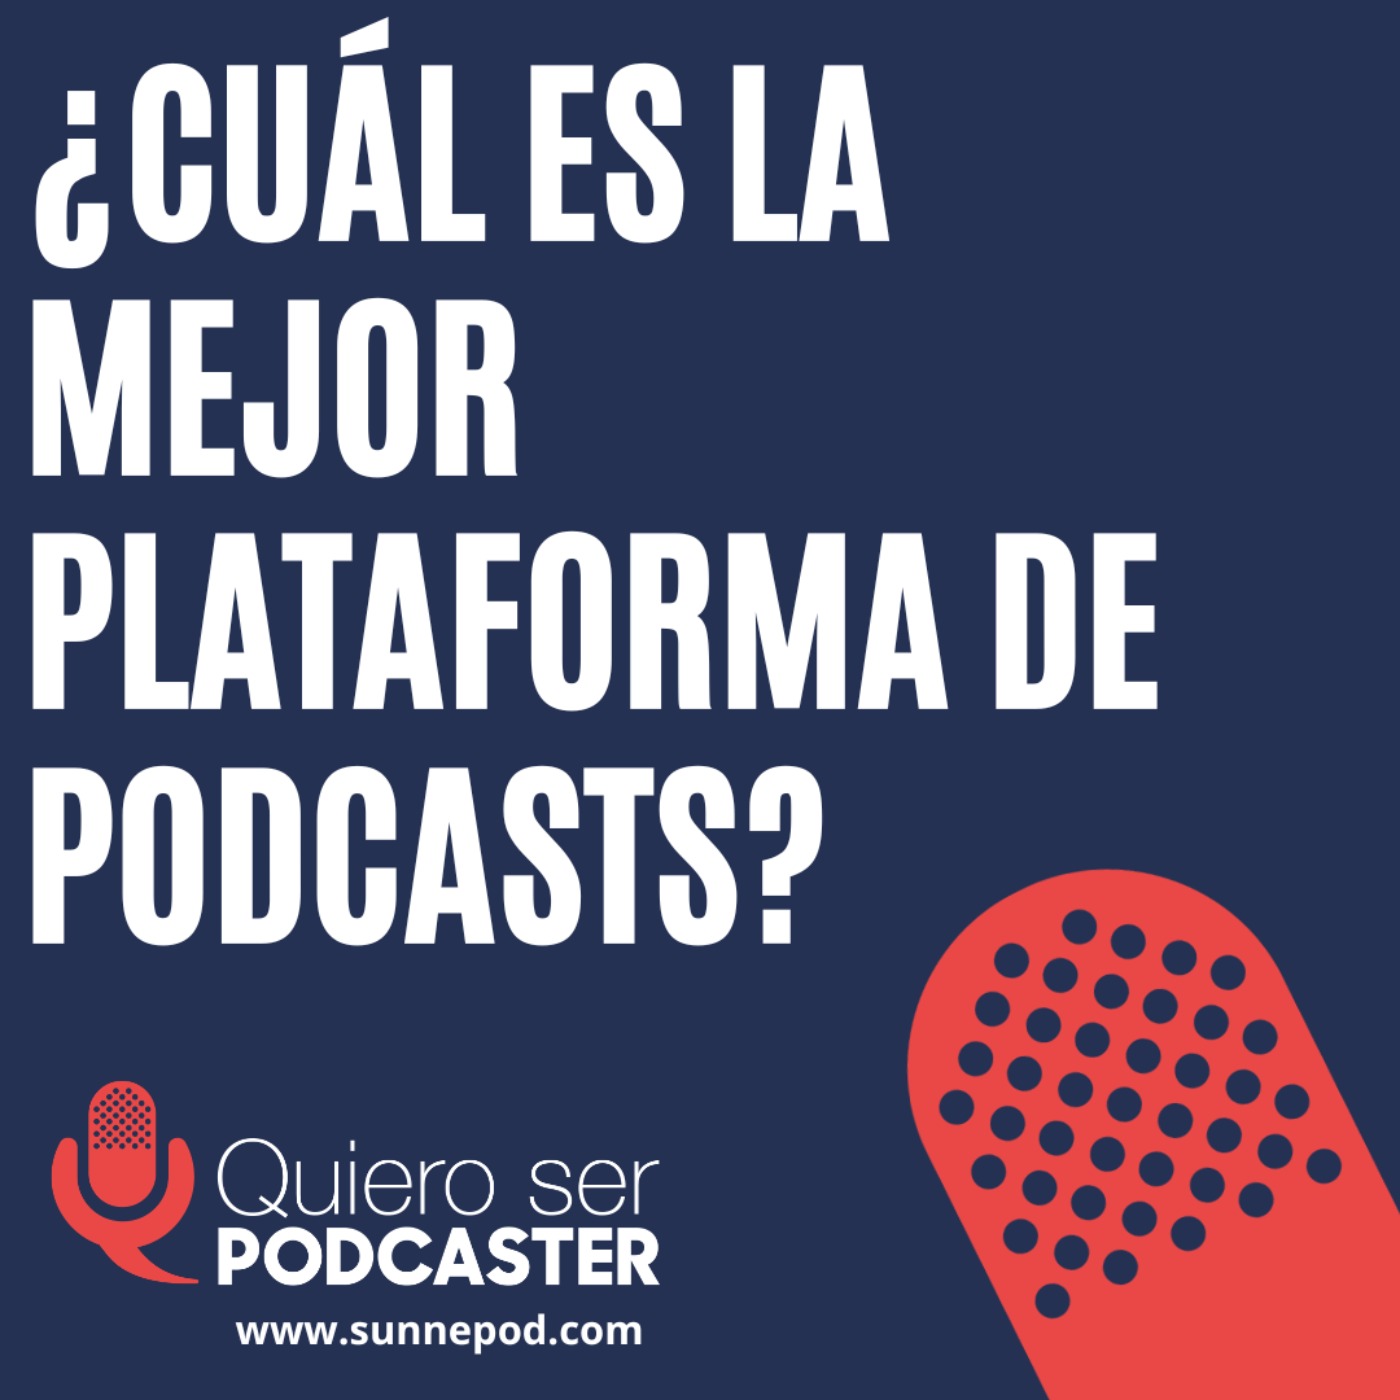 ¿Cuál es la mejor plataforma de podcasts?